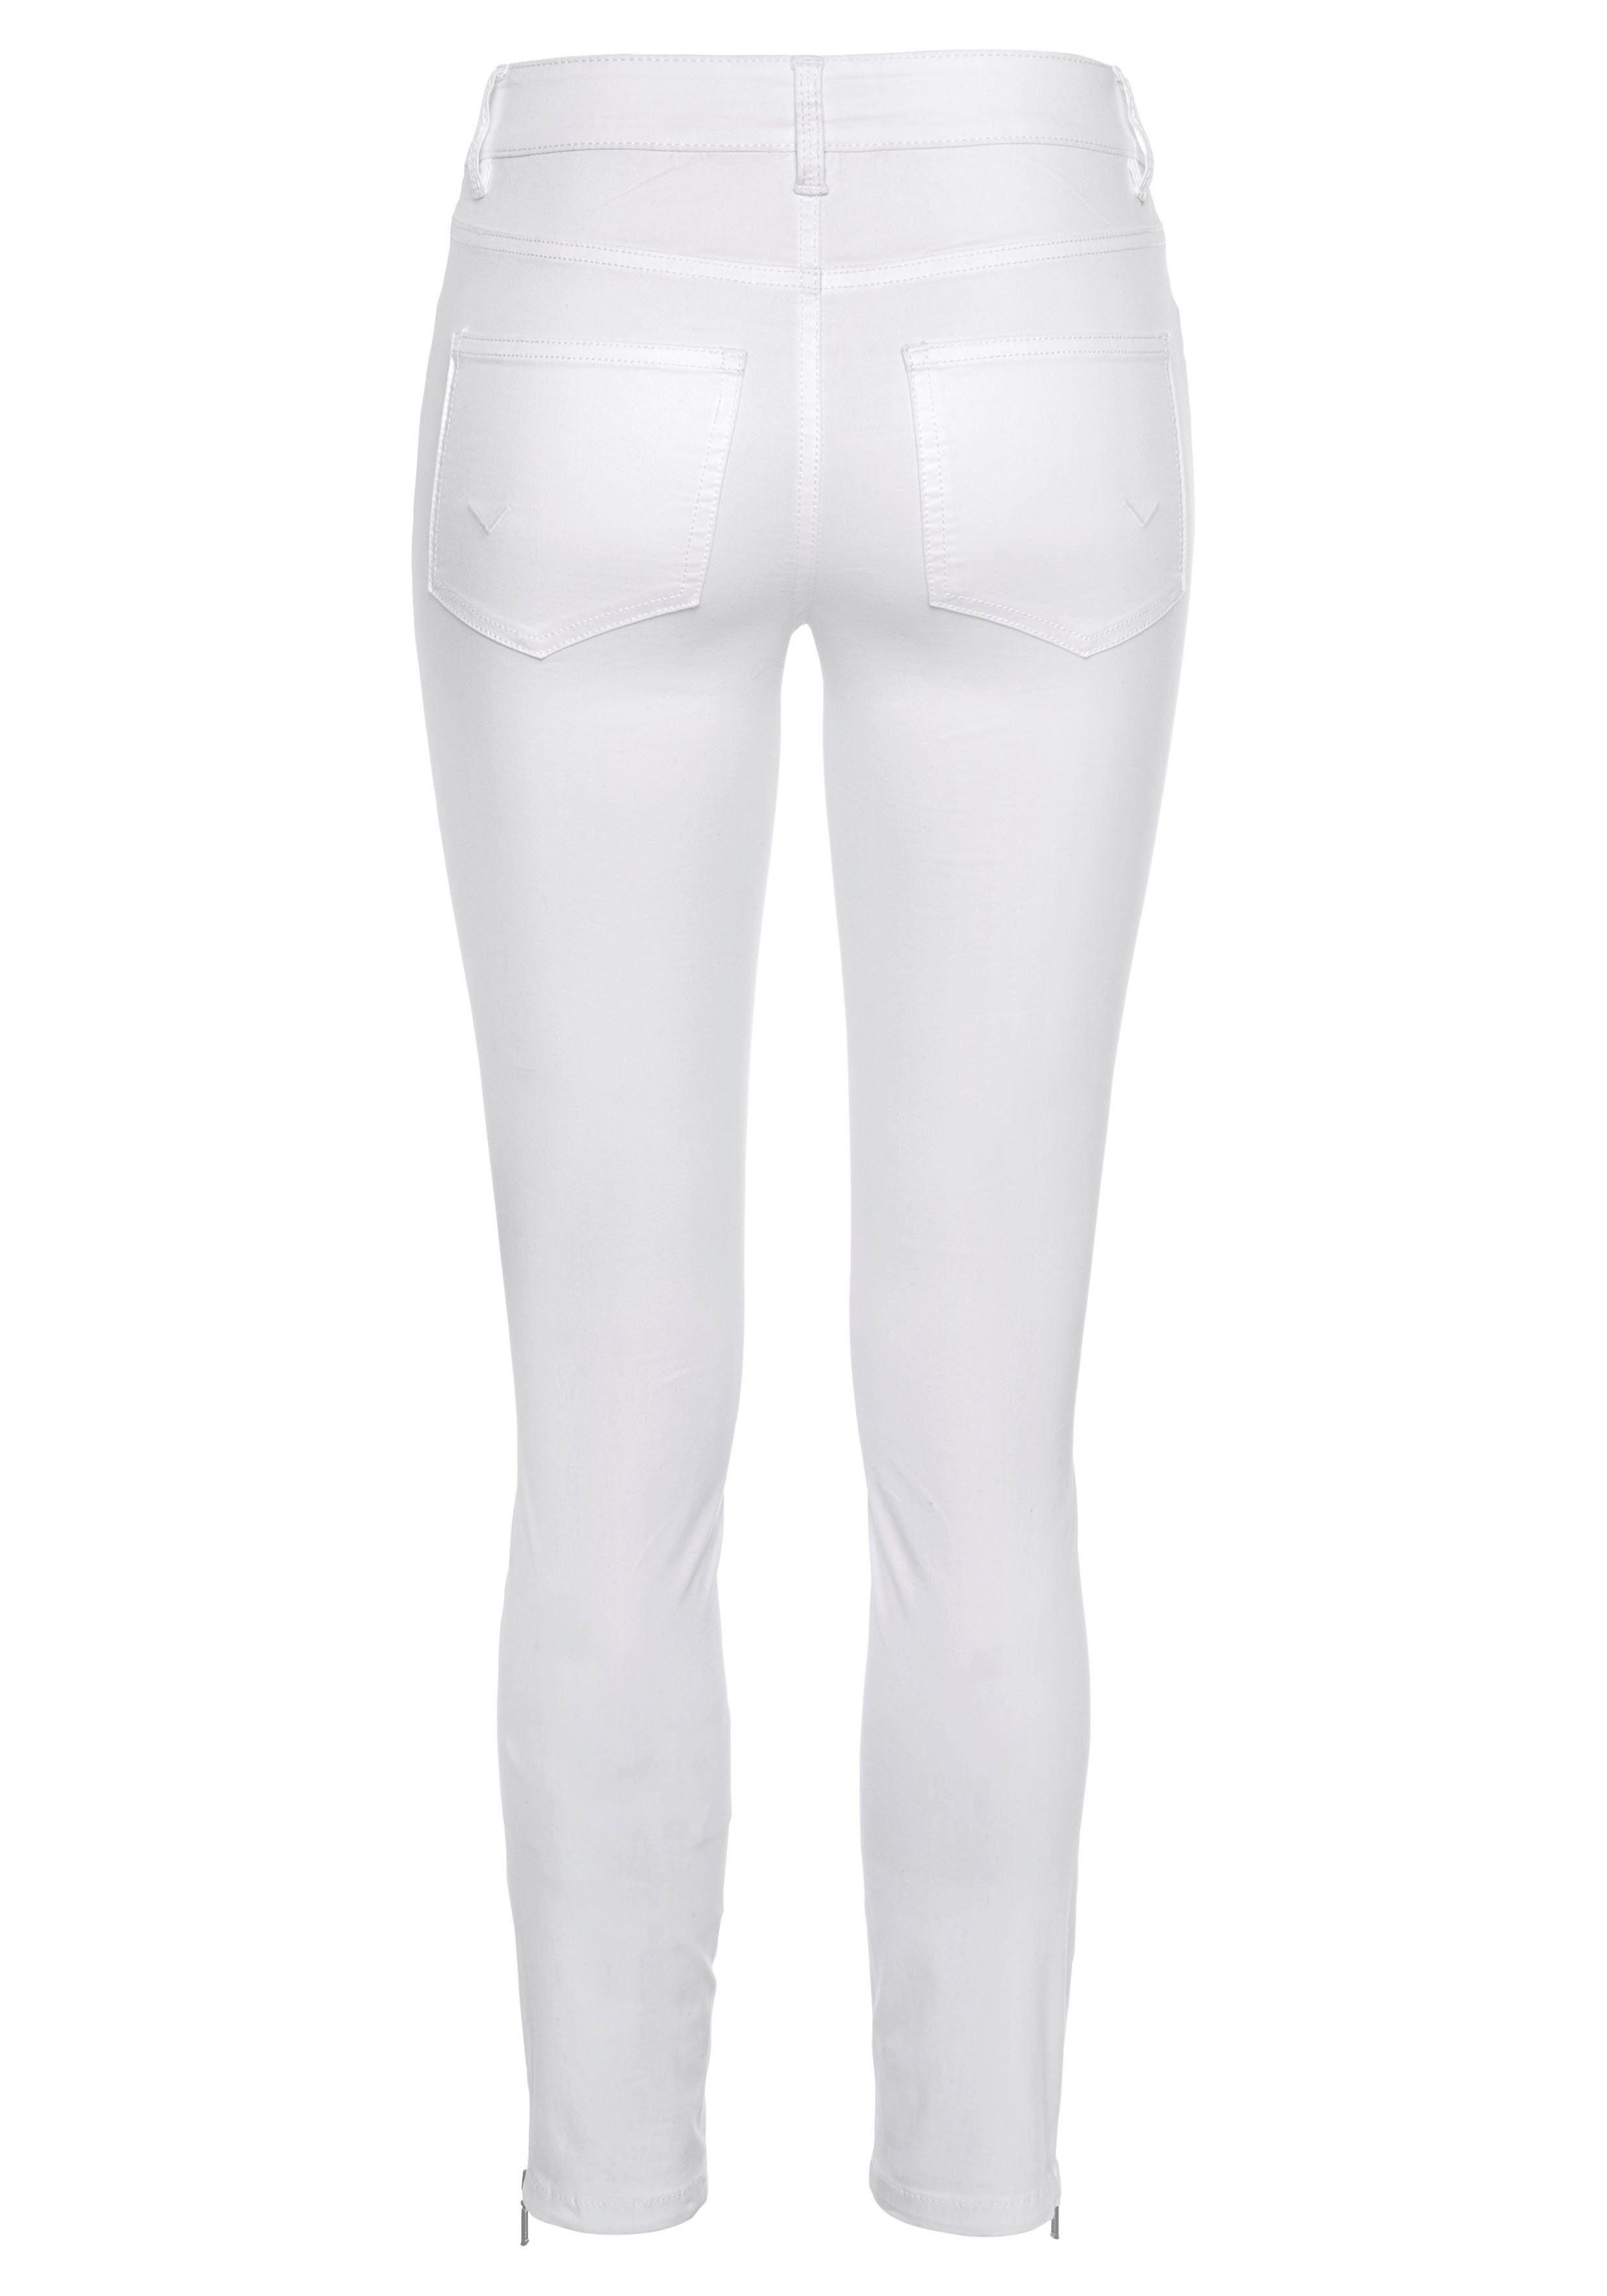 Team weiß Polo Slim-fit-Jeans 5-Pocket-Stil TAILOR TOM im